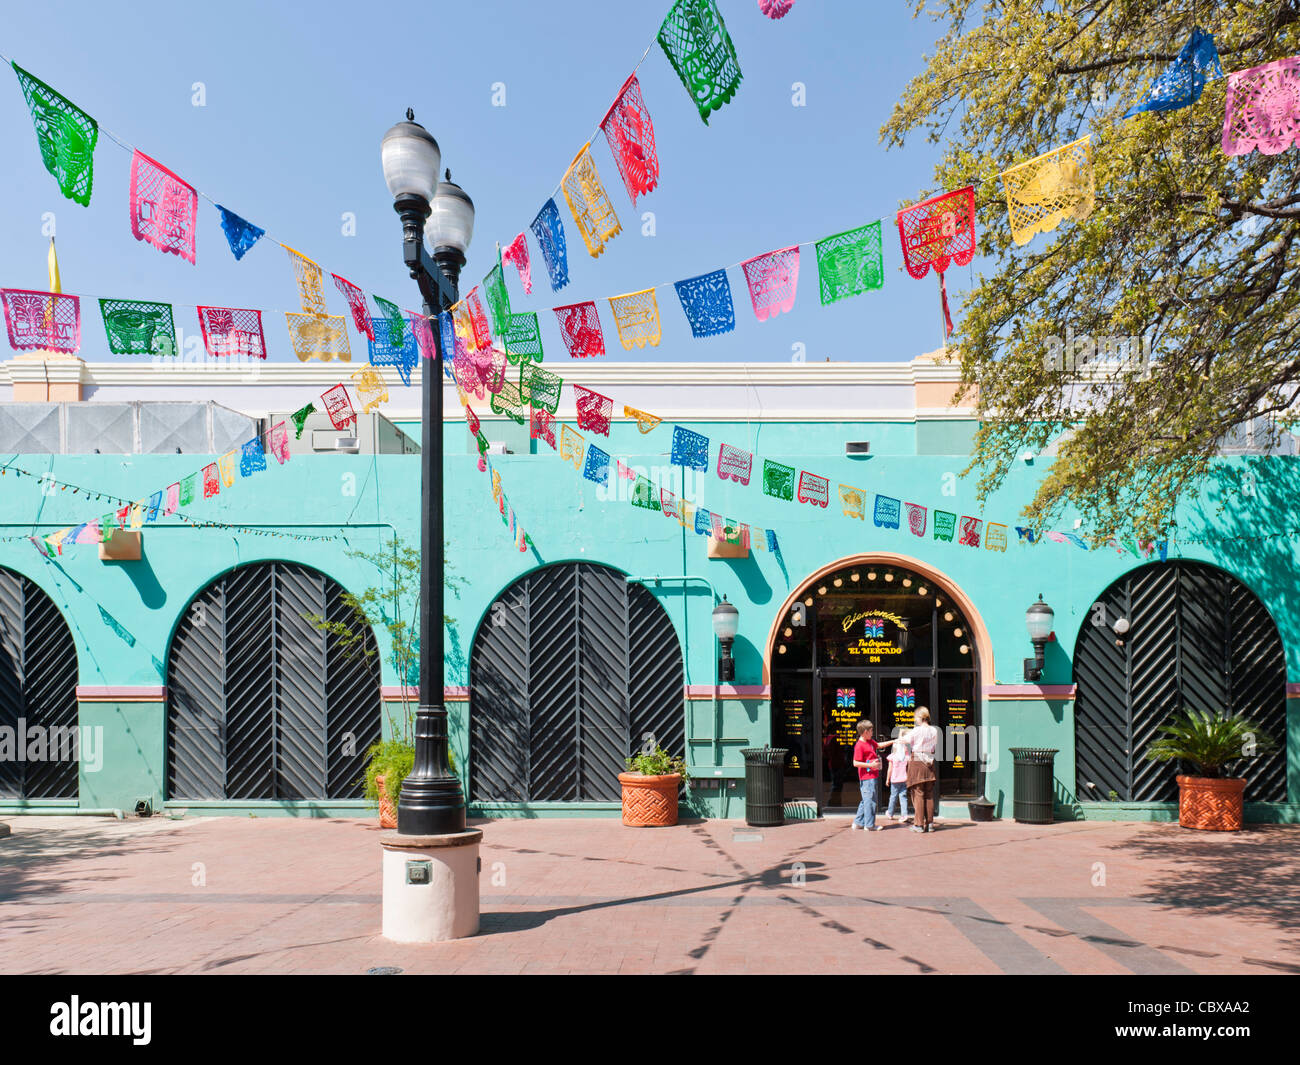 El Mercado, San Antonio Stock Photo